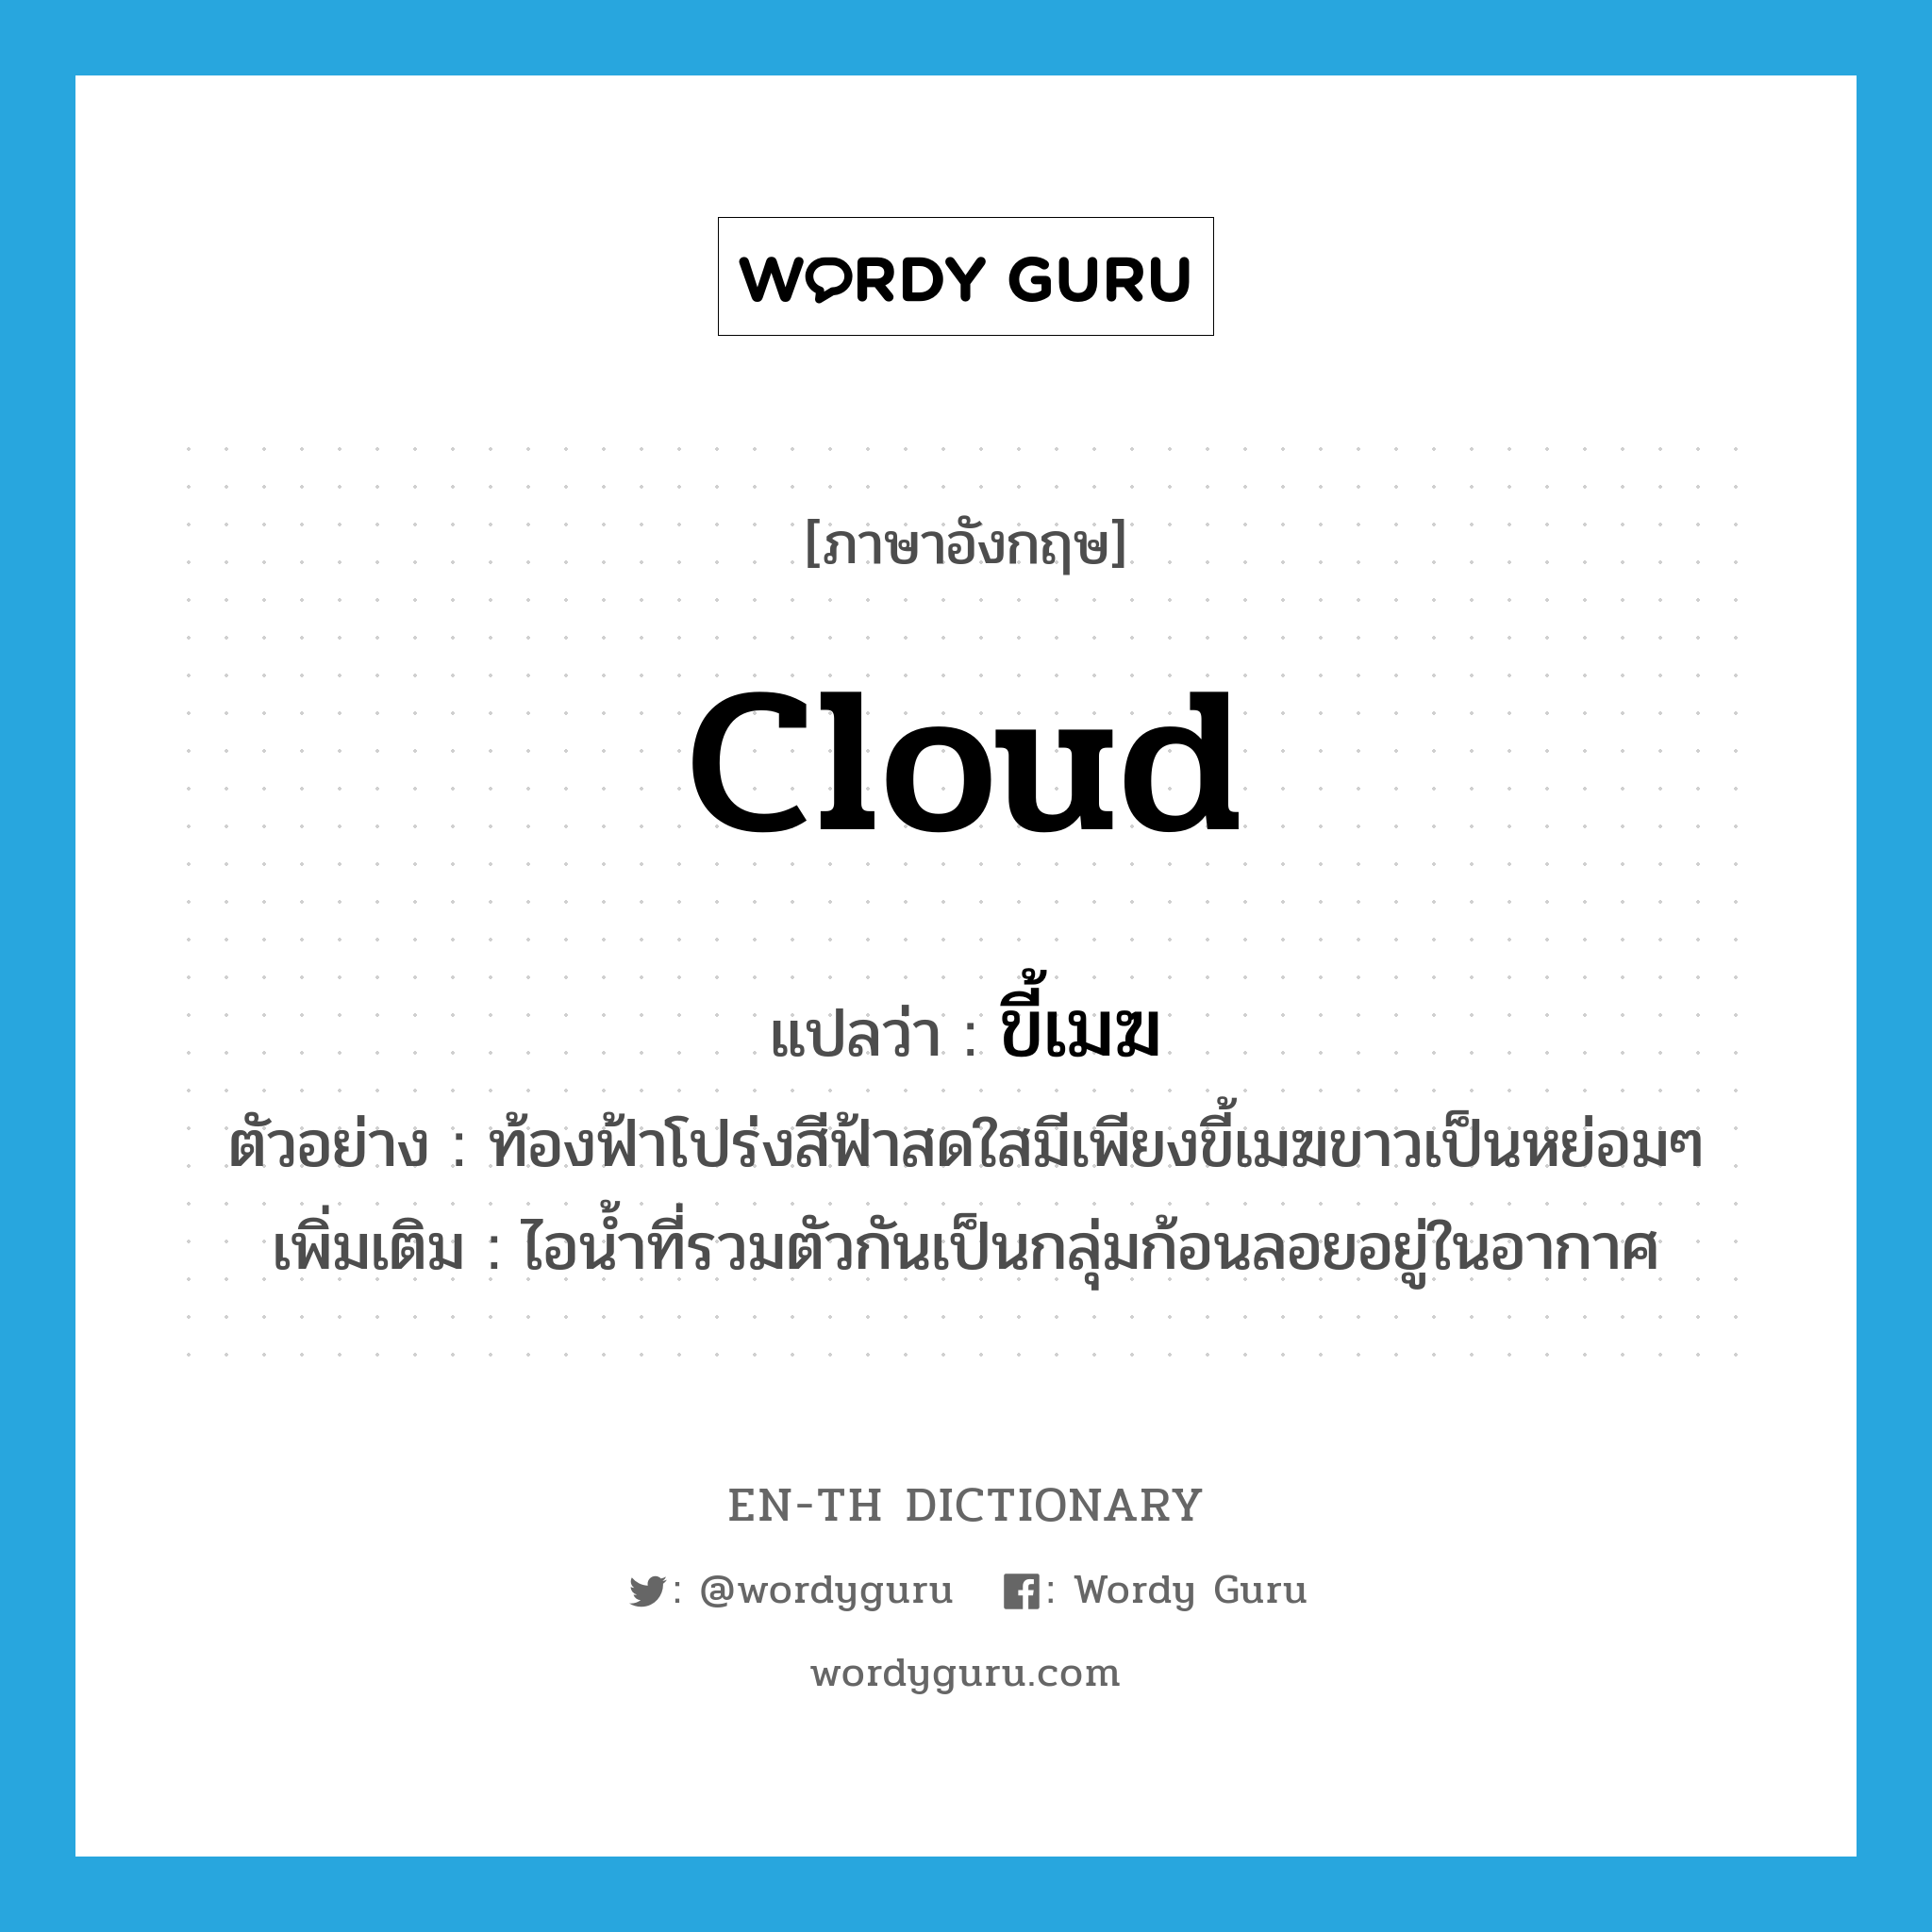 cloud แปลว่า?, คำศัพท์ภาษาอังกฤษ cloud แปลว่า ขี้เมฆ ประเภท N ตัวอย่าง ท้องฟ้าโปร่งสีฟ้าสดใสมีเพียงขี้เมฆขาวเป็นหย่อมๆ เพิ่มเติม ไอน้ำที่รวมตัวกันเป็นกลุ่มก้อนลอยอยู่ในอากาศ หมวด N